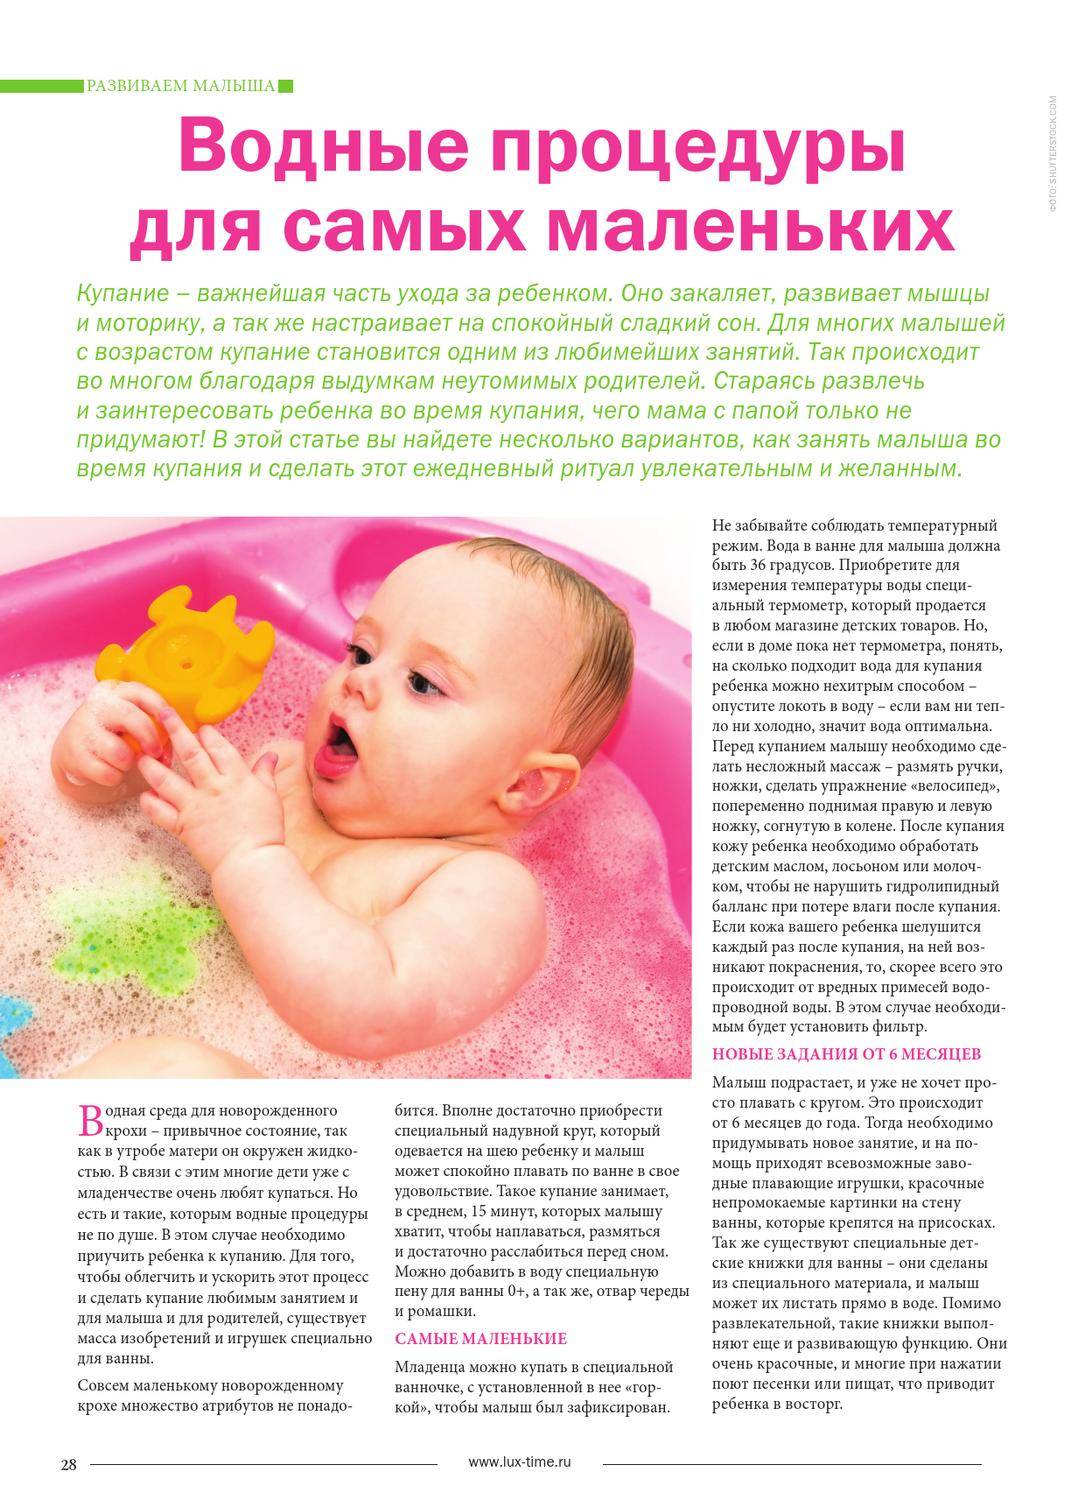 Купание новорожденного - какой должна быть температура воды, чтобы не навредить малышу? - все про воду